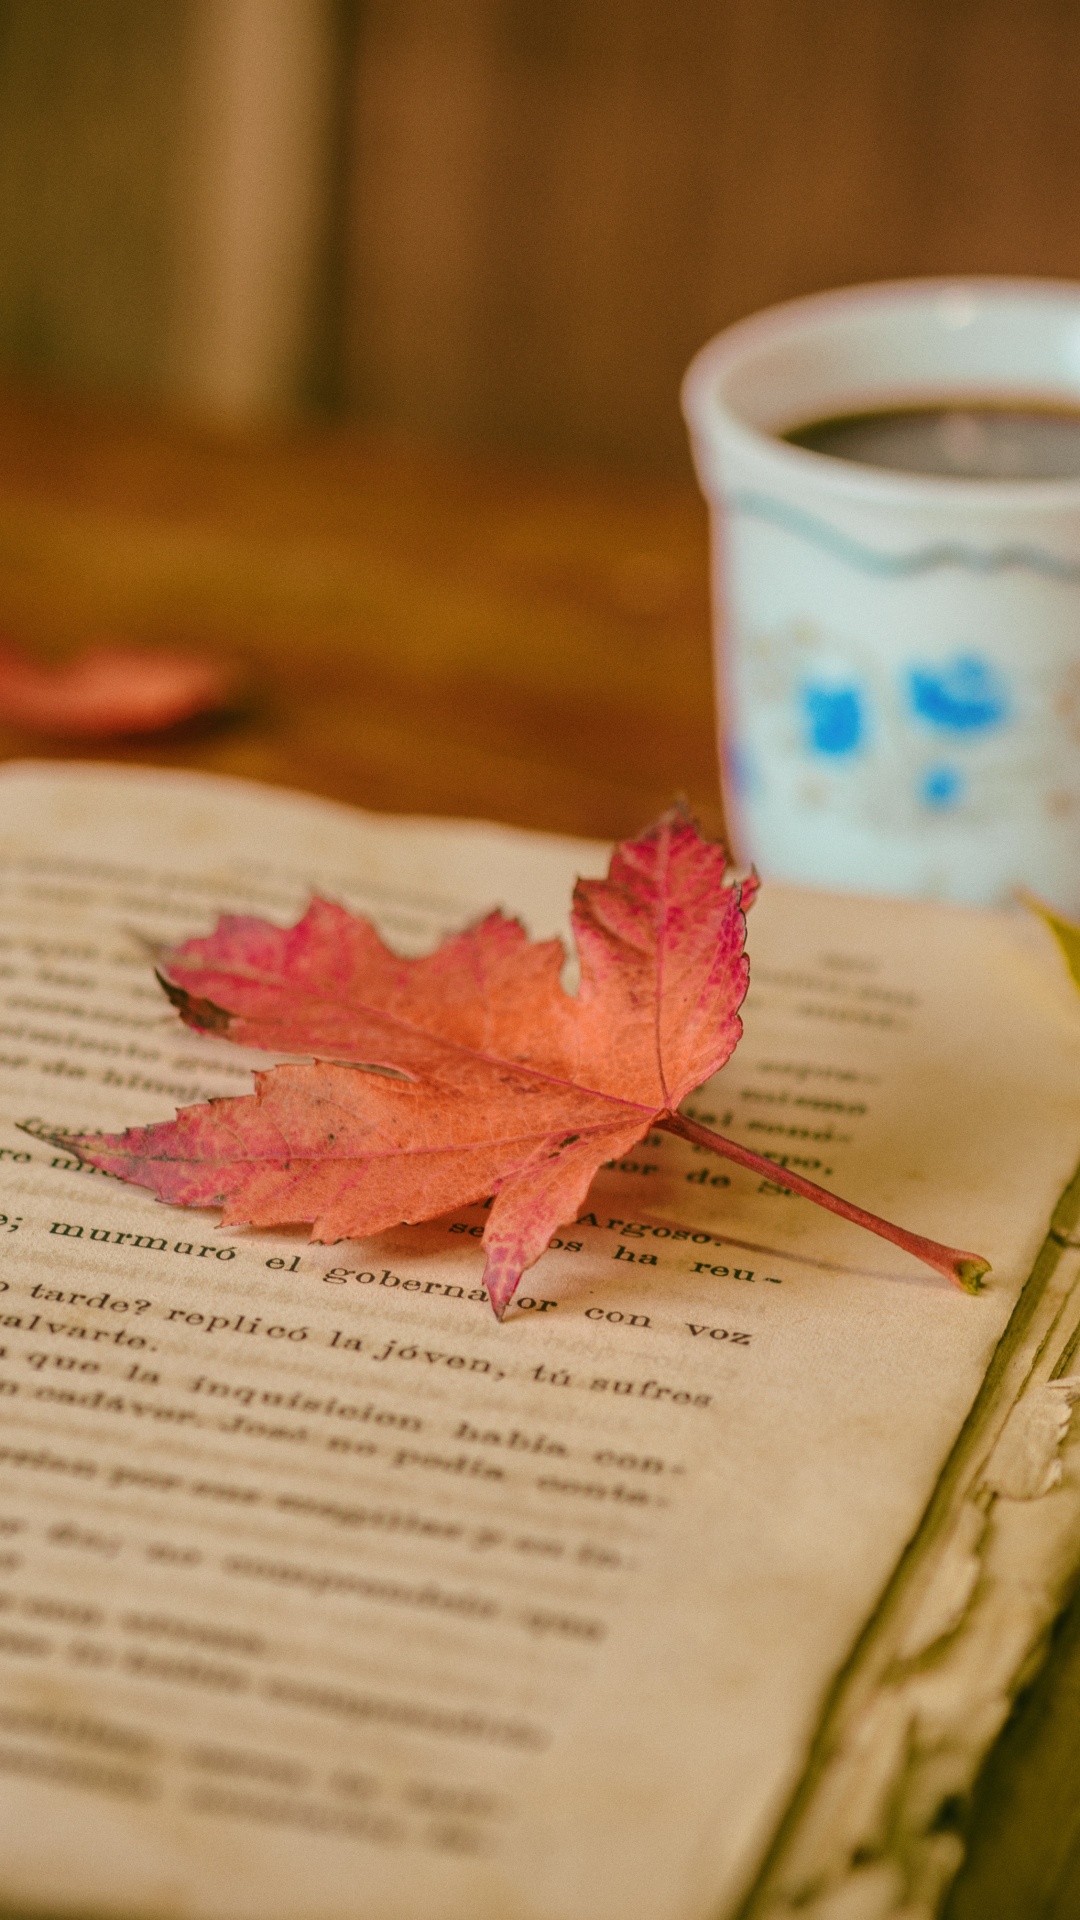 本书, 书评, 阅读, 咖啡杯, 粉红色 壁纸 1080x1920 允许